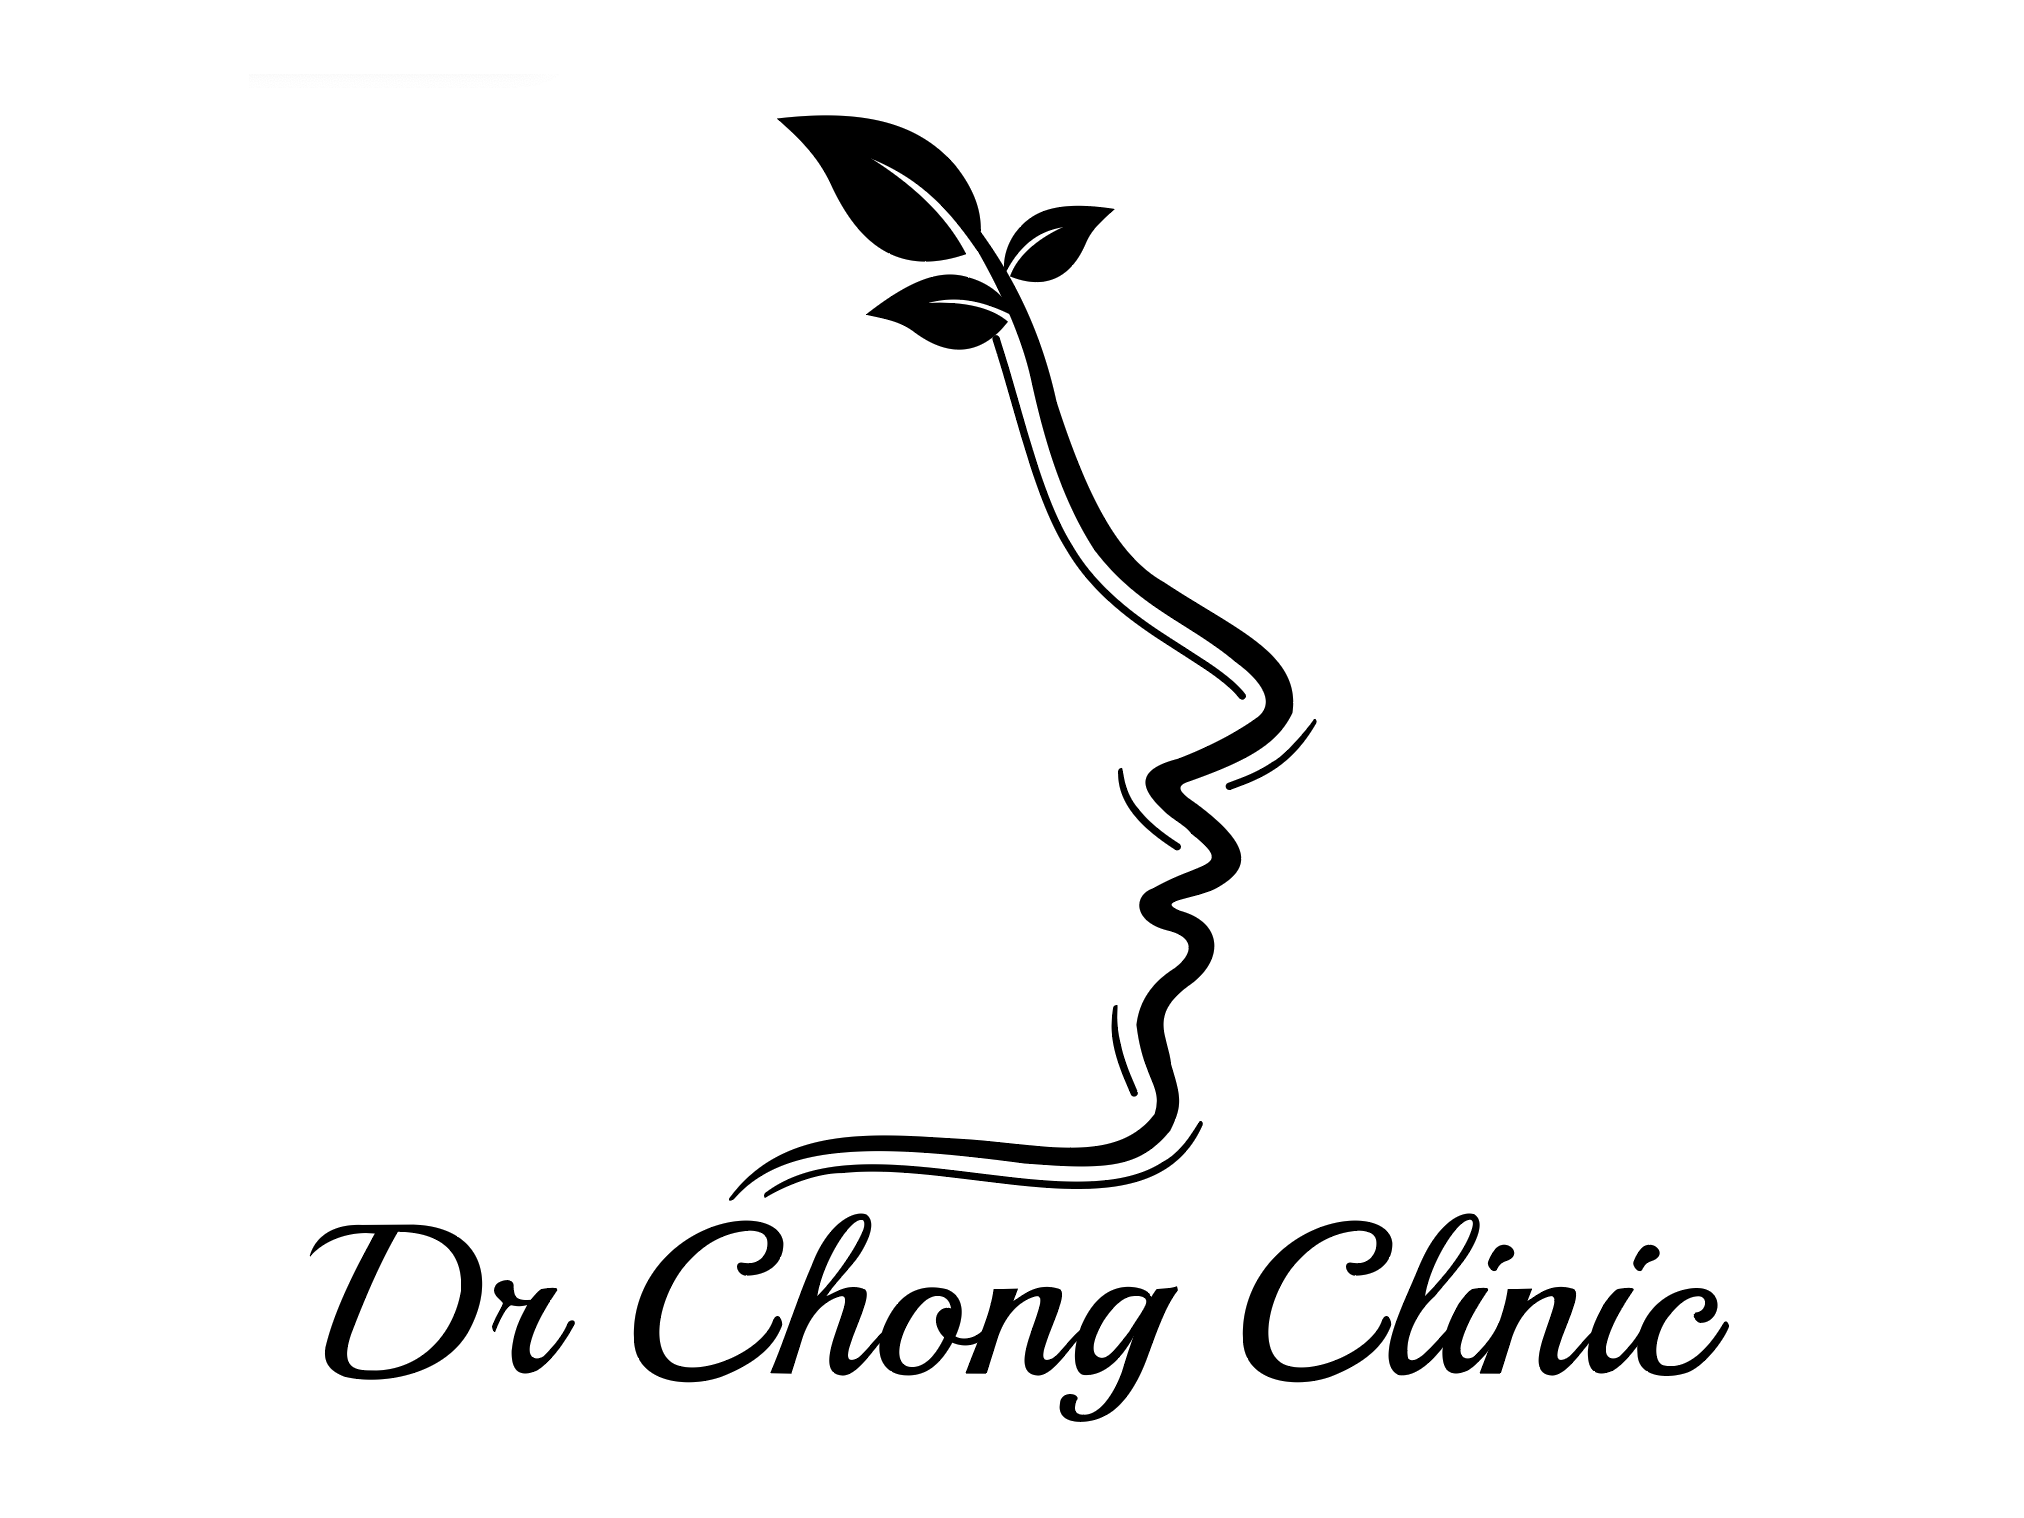 Dr Chong Clinic　バンサー、TTDI、ケポン、シャーアラム、ジョホールバルに支店 美容医療部門において、保健省の認定資格を持つドクターチームにより最新の医療技術を提供